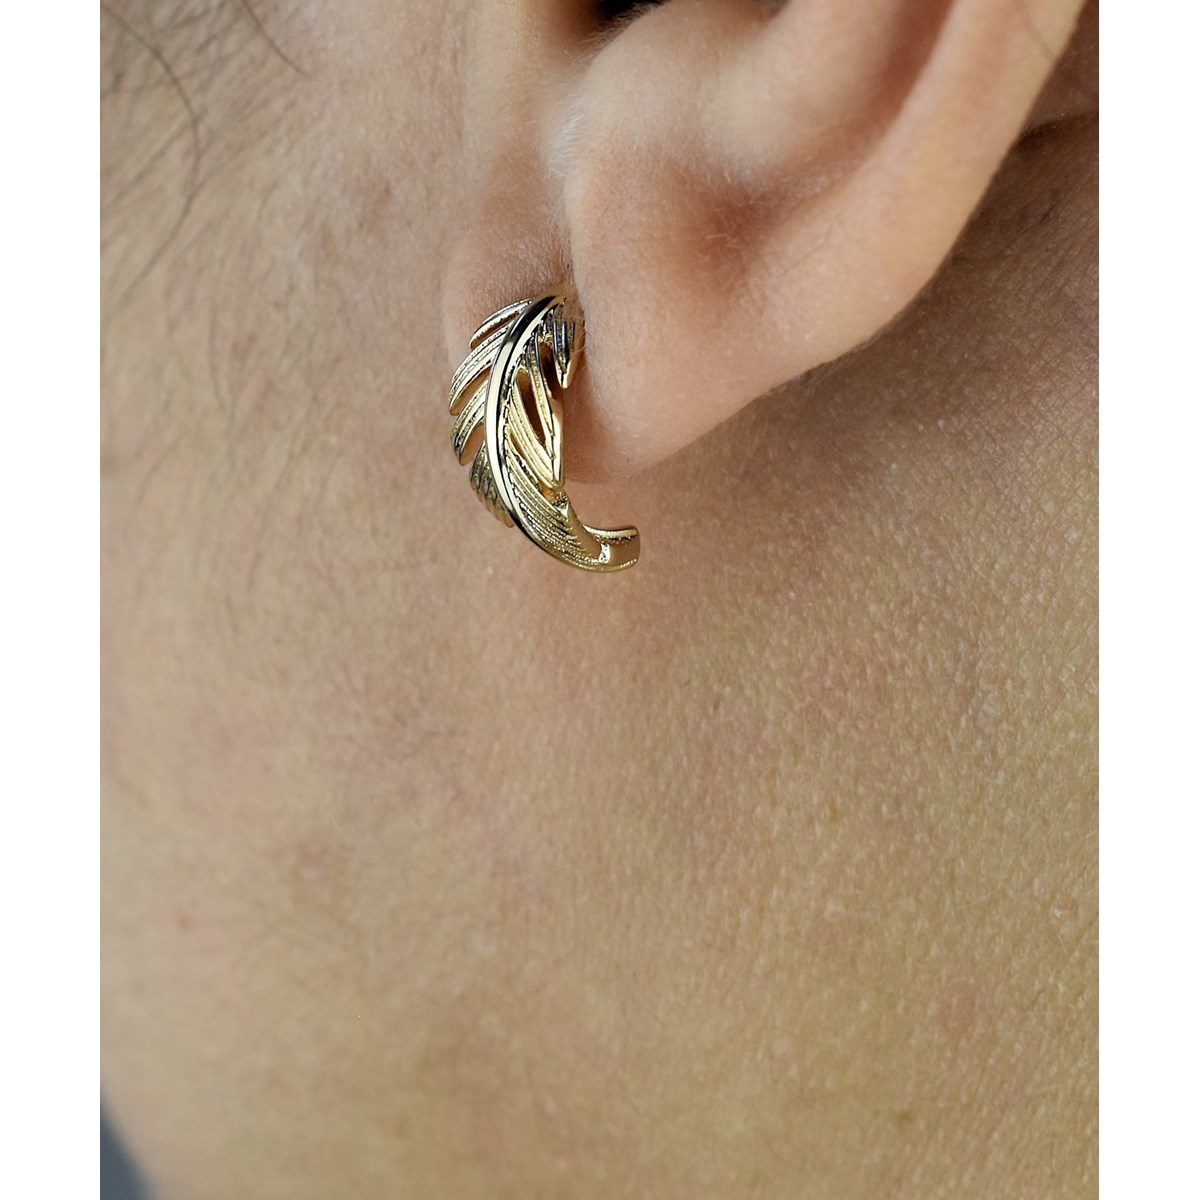 Boucles d'oreilles Créoles feuille courbée Plaqué OR 750 3 microns - vue 2